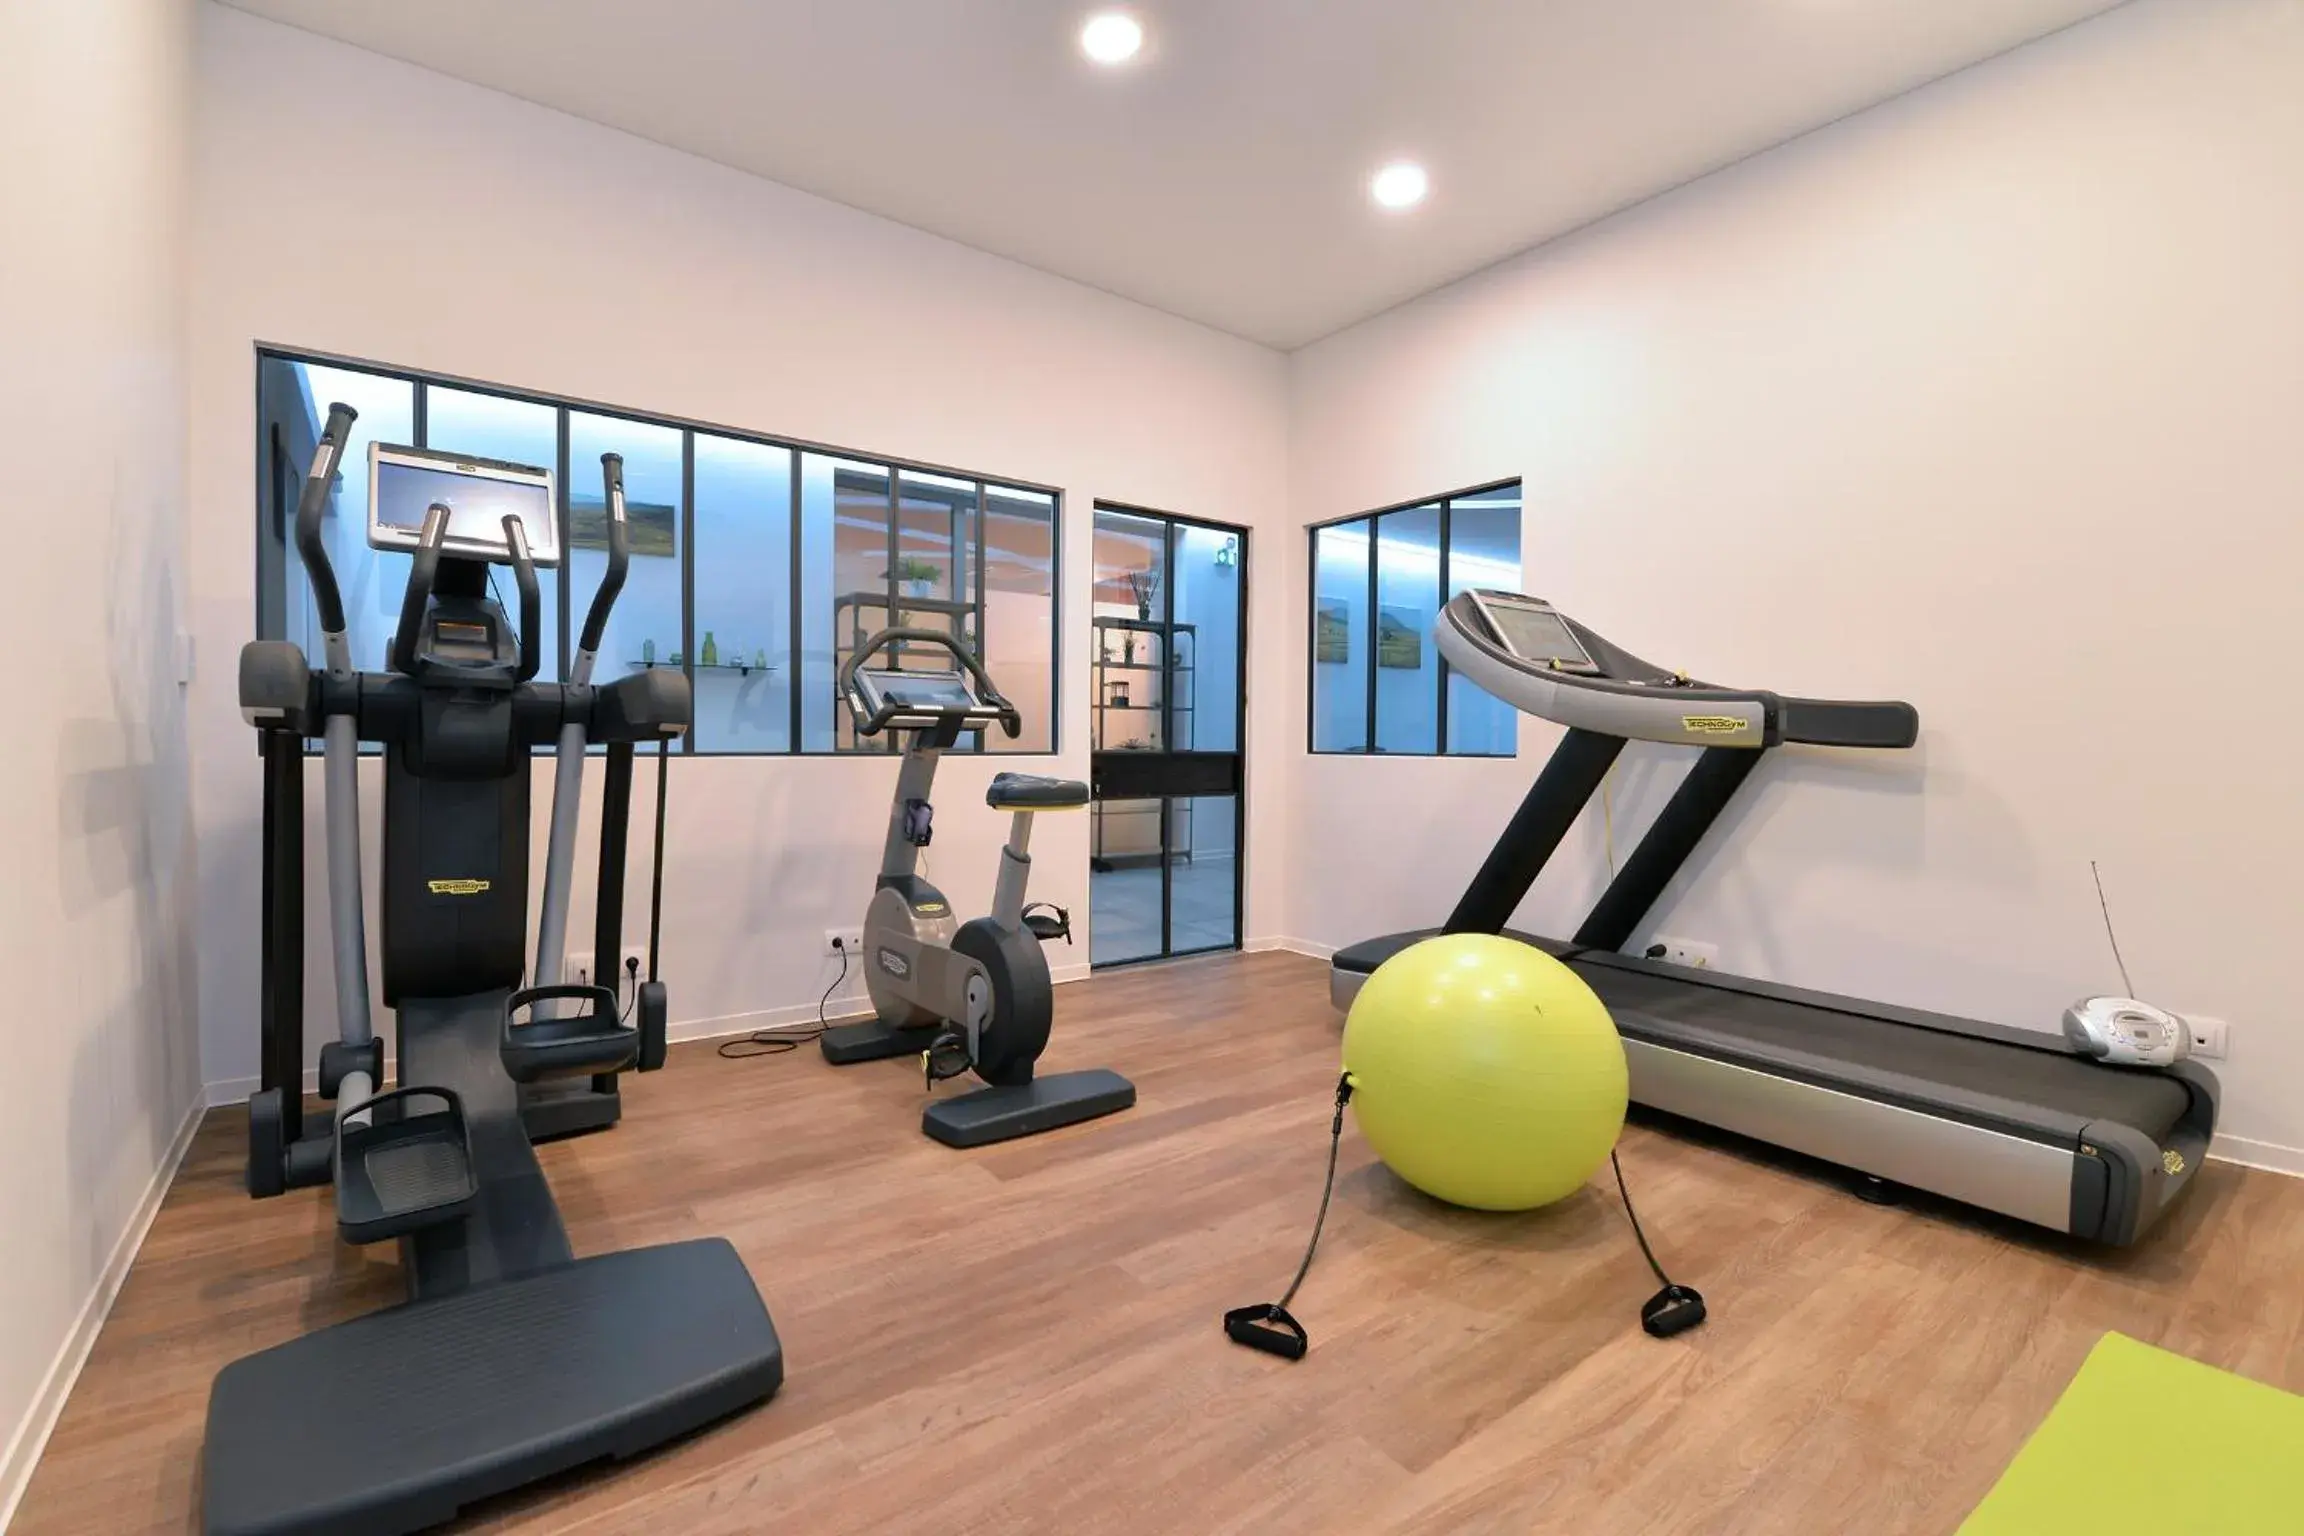 Fitness centre/facilities, Fitness Center/Facilities in L'éclos des vignes - Appartements haut de gamme avec Spa